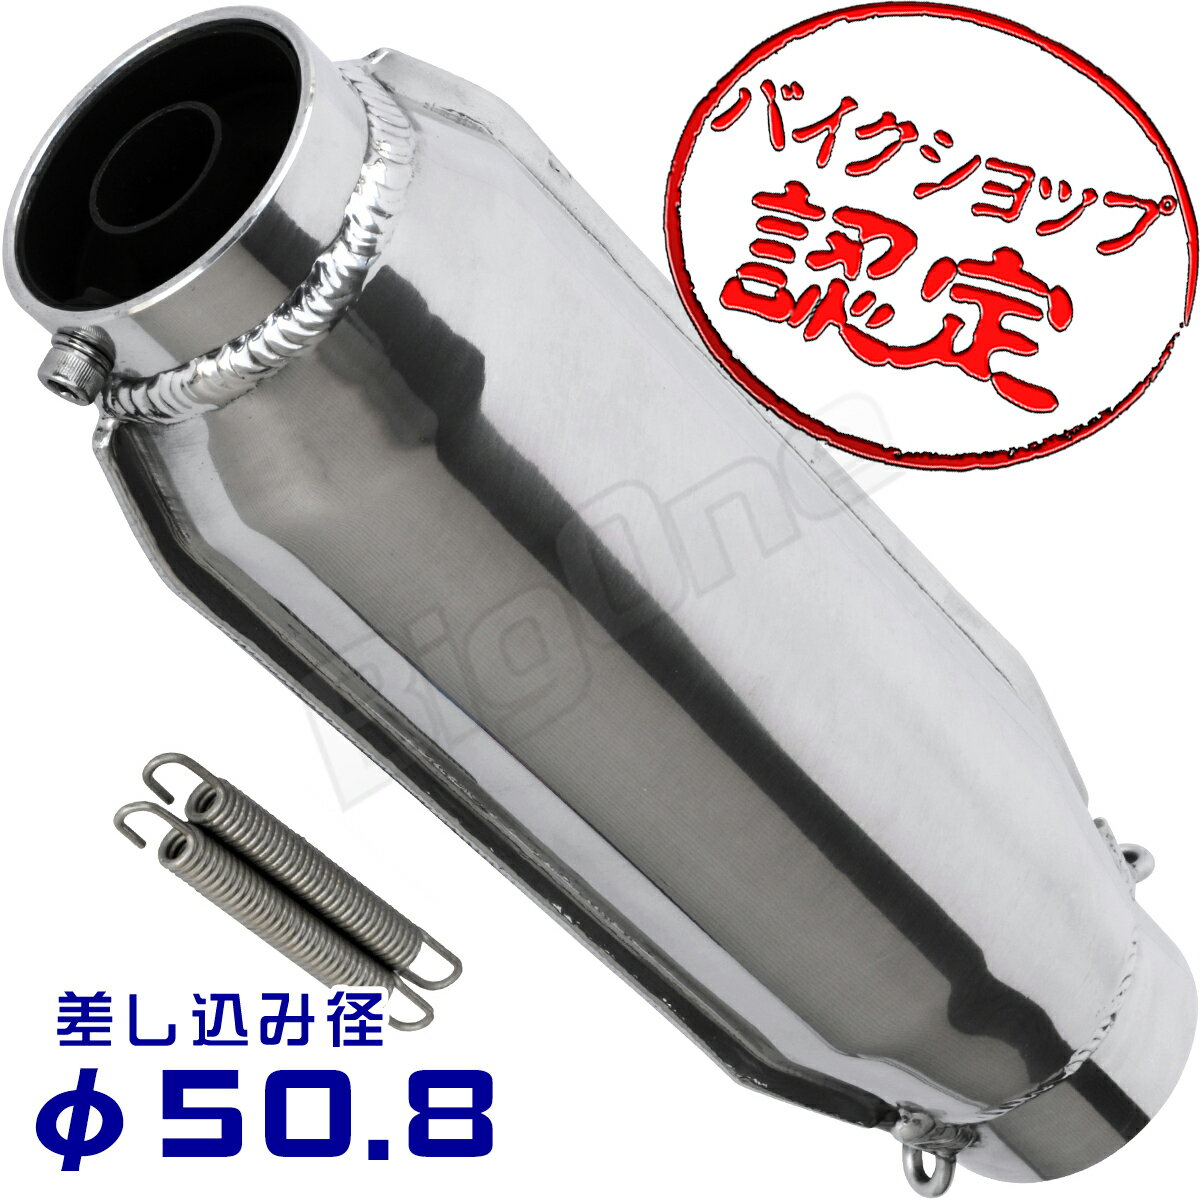 BigOne モナカ サイレンサー 50.8mm スリップオン マフラー 汎用 モナカ管 ショート管 50.8φ